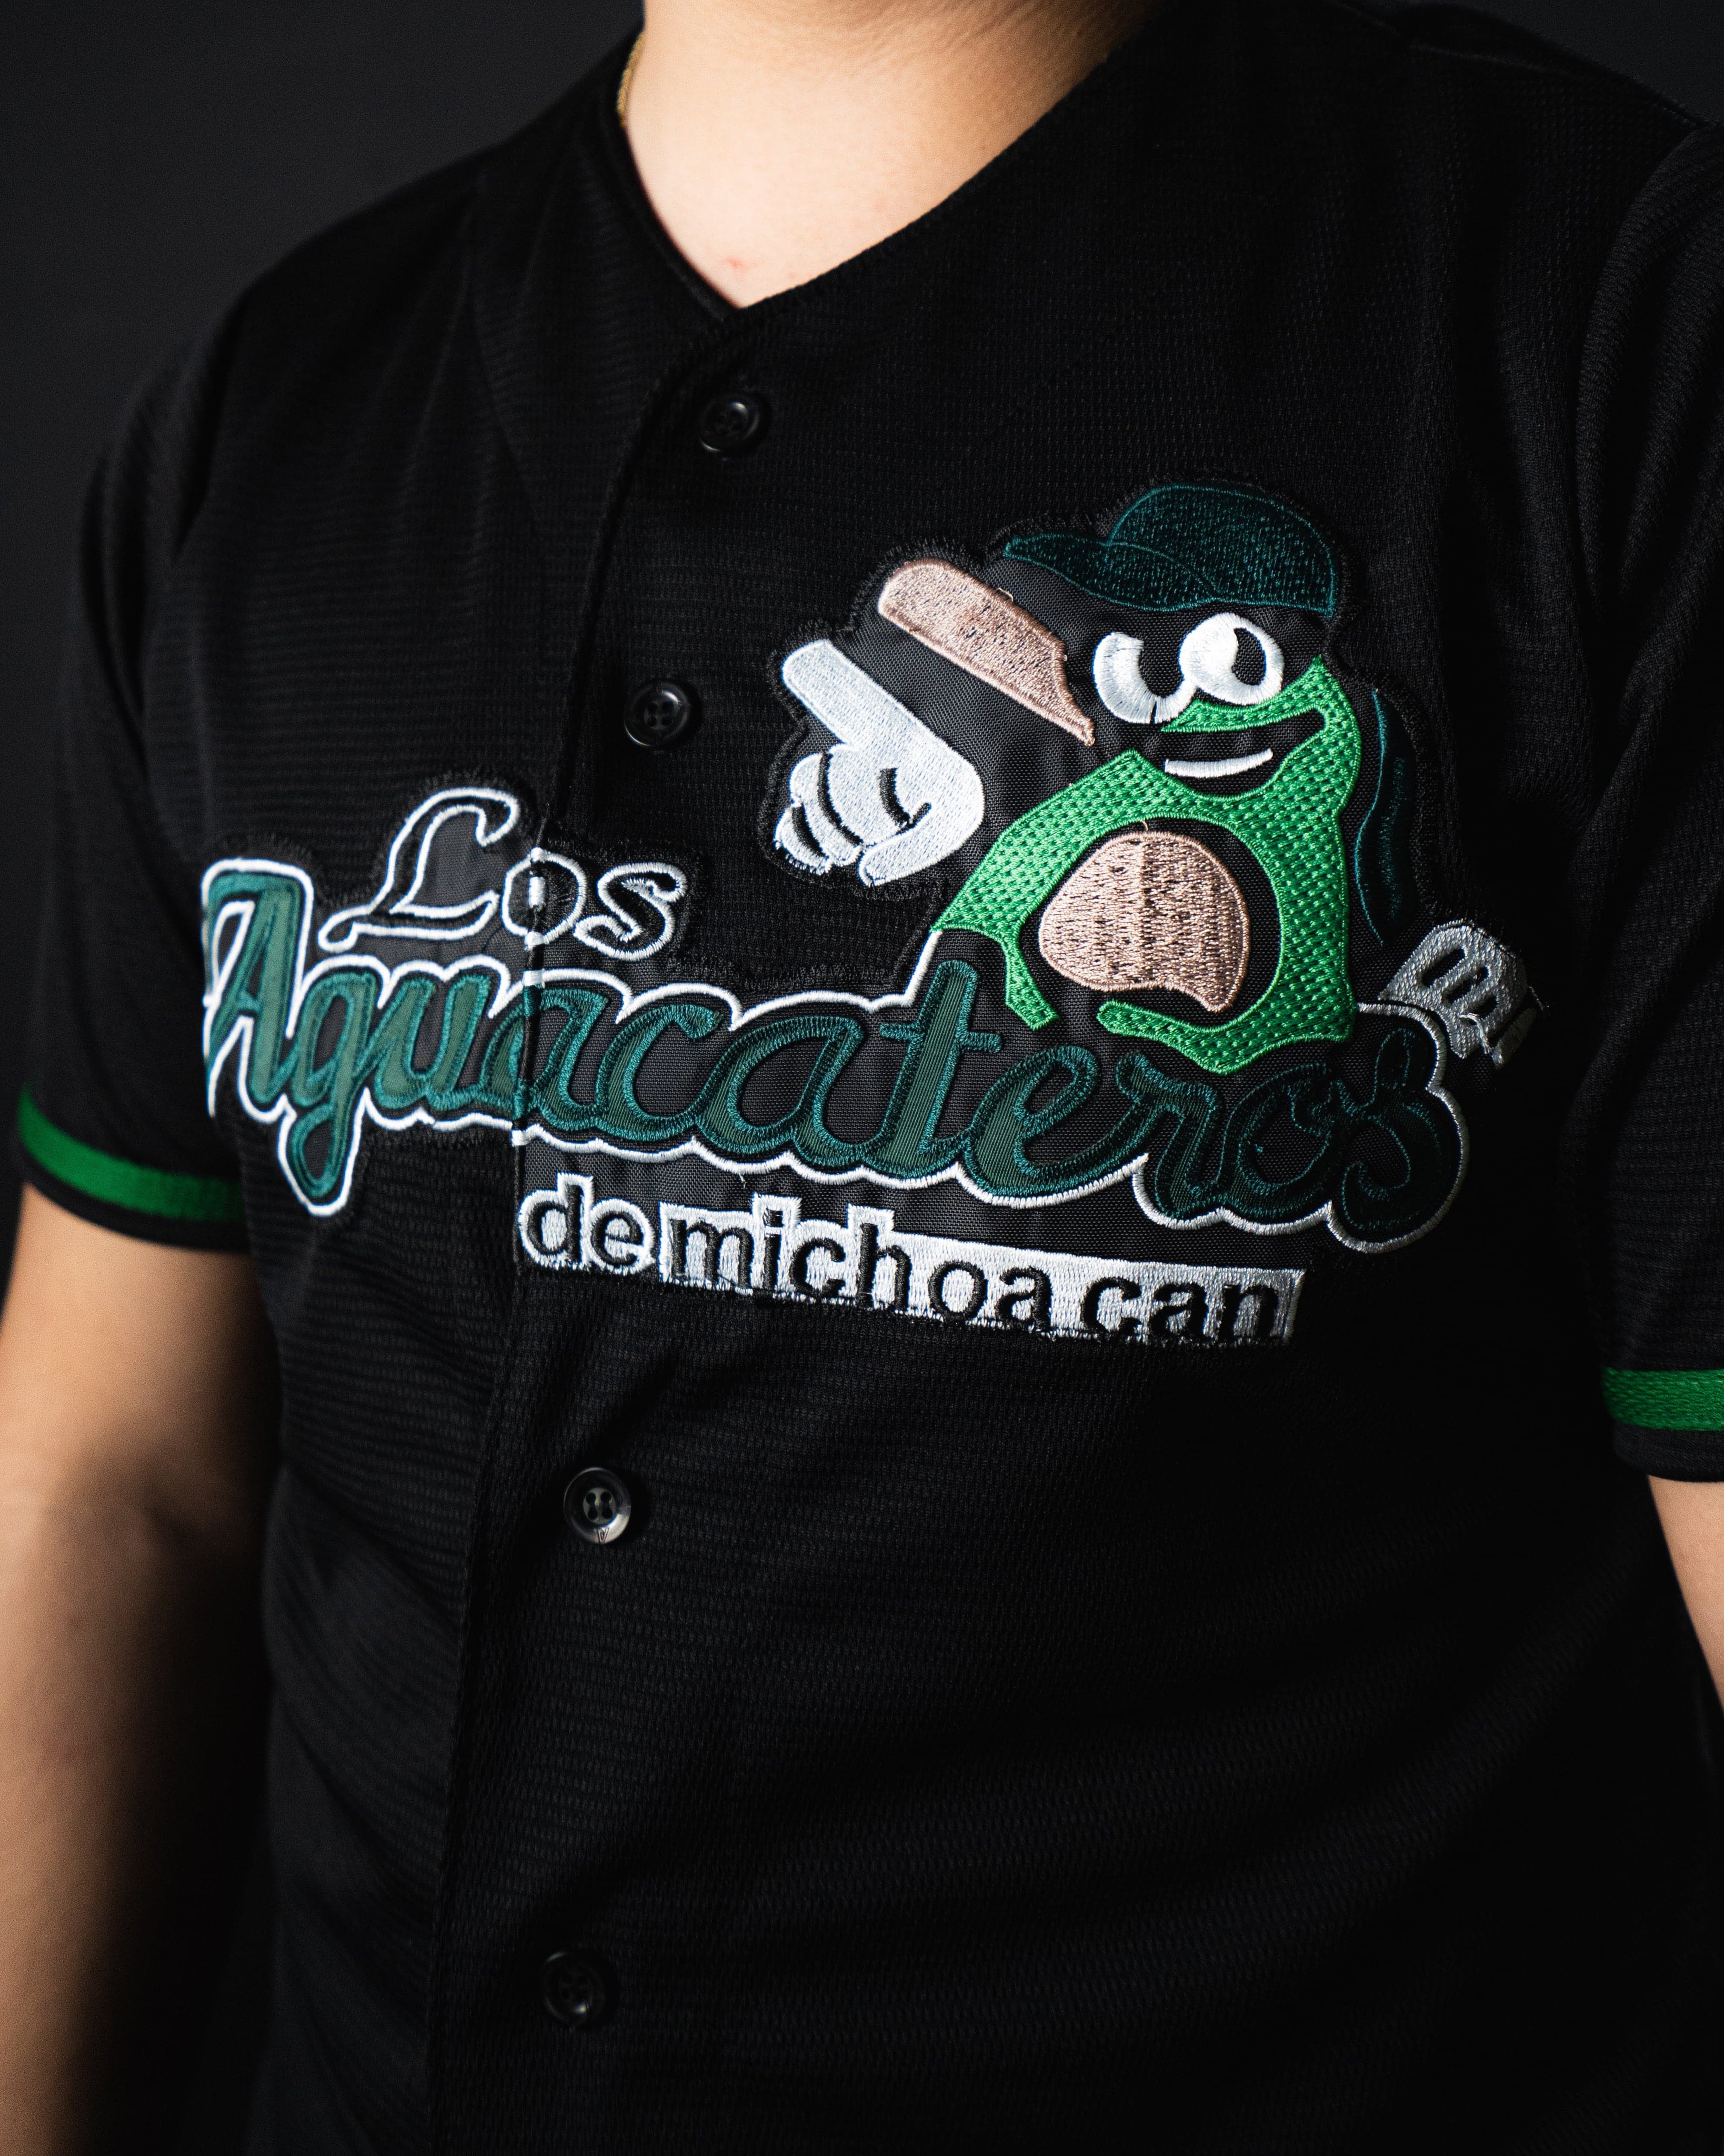 Los Aguacateros de Michoacan Custom Baseball Jerseys